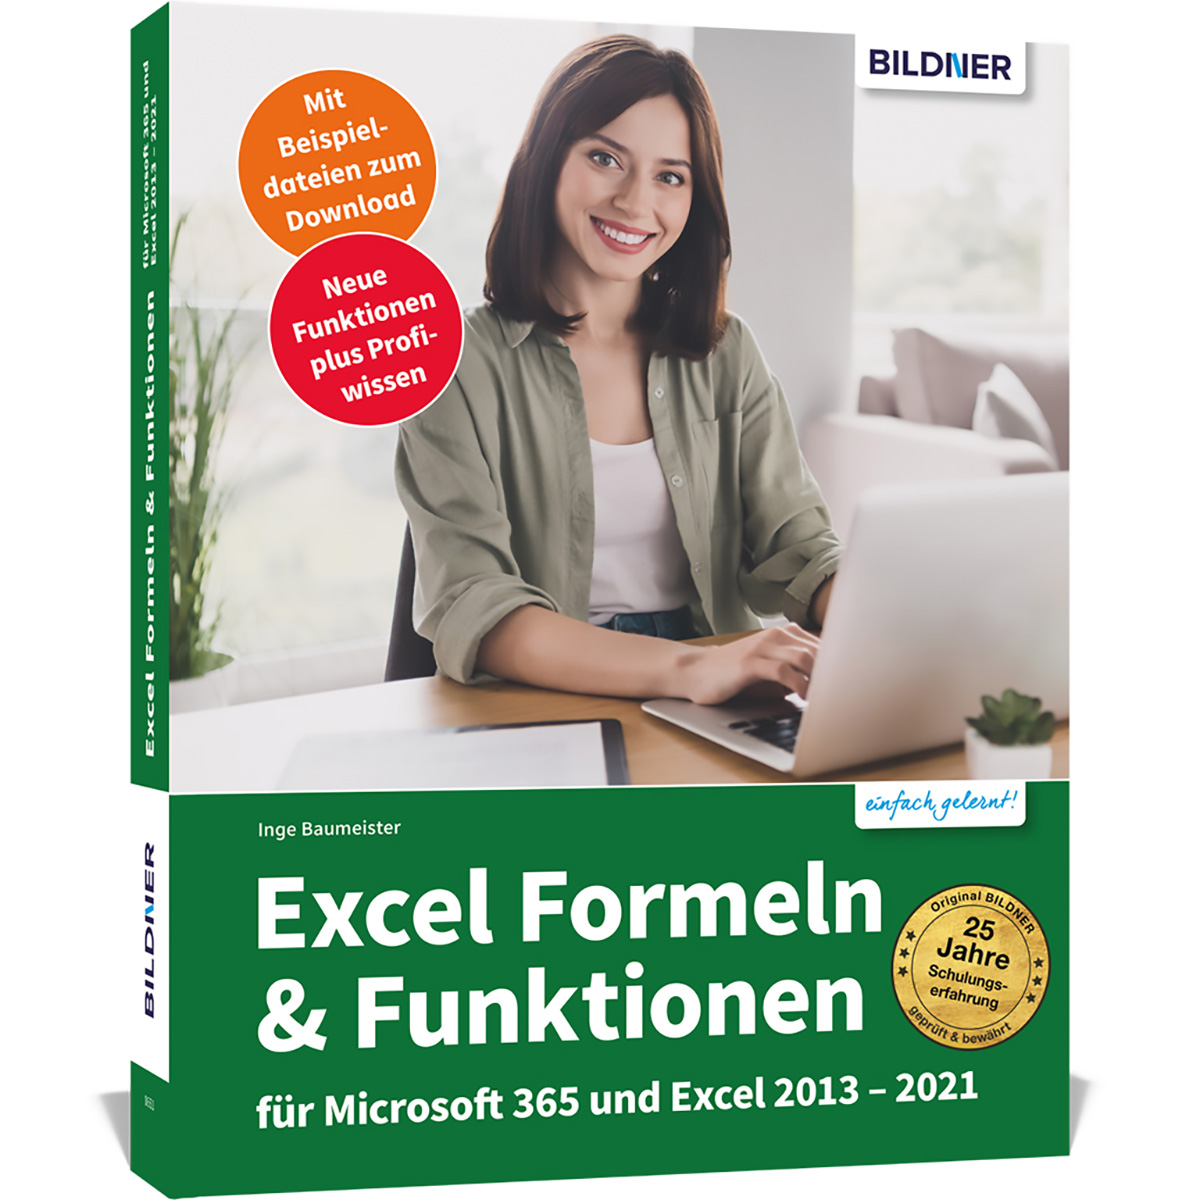 Microsoft Funktionen 2013-2021 365 Formeln & für Excel und Excel